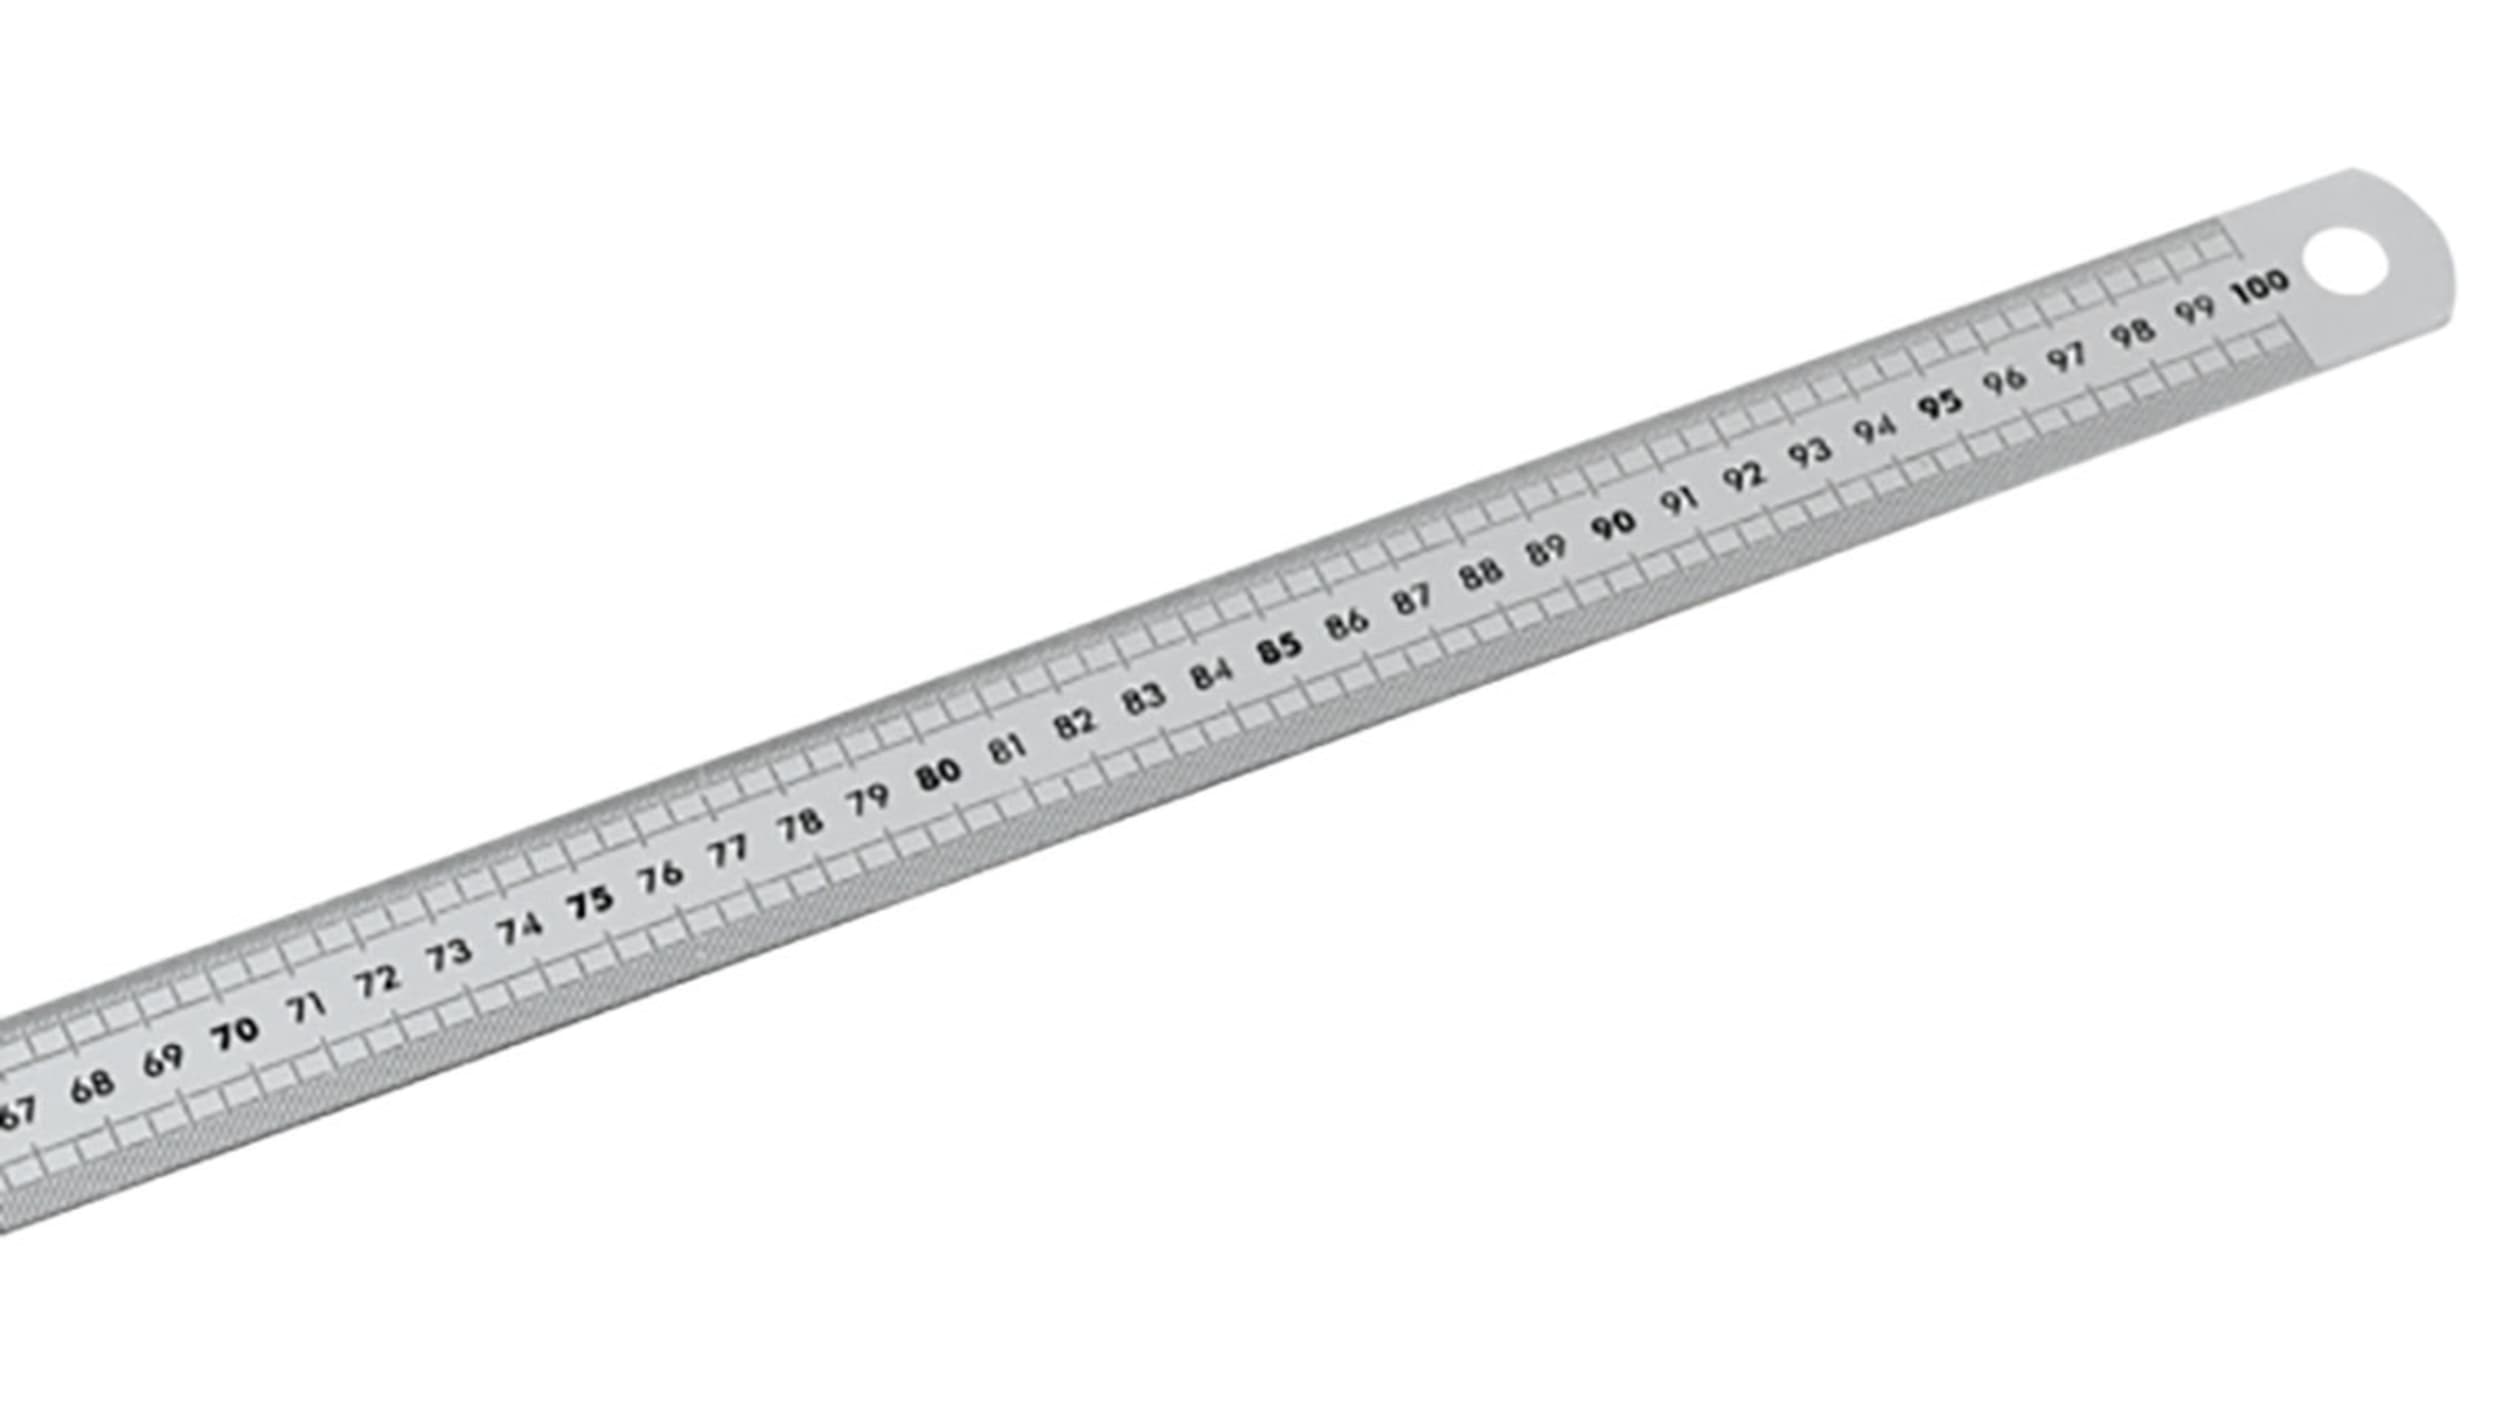 DELA.1056.1000, Facom 1m Stainless Steel Metric Ruler